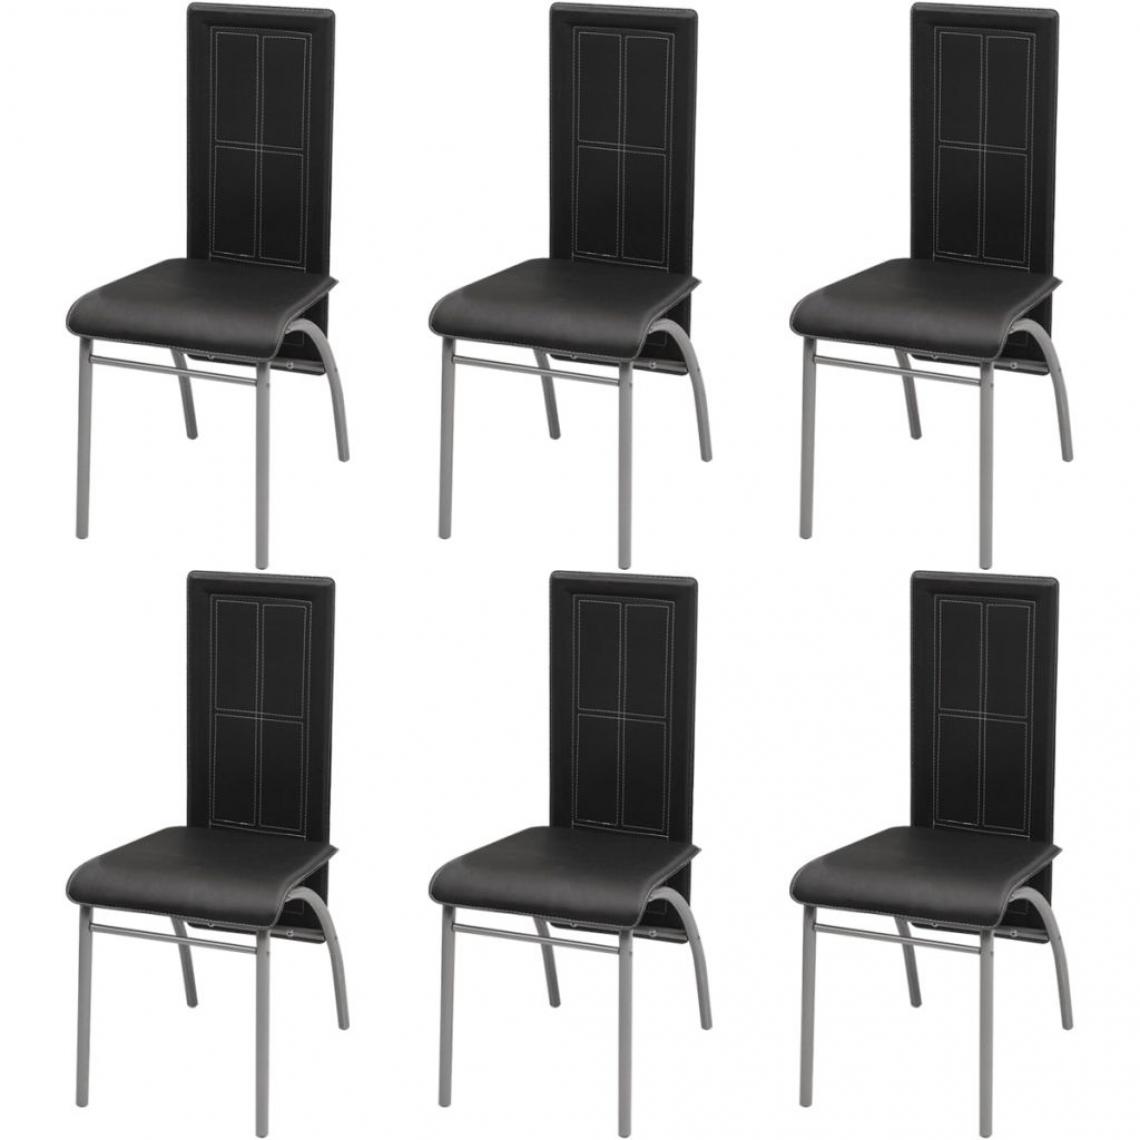 Decoshop26 - Lot de 6 chaises de salle à manger cuisine design moderne similicuir noir CDS022689 - Chaises